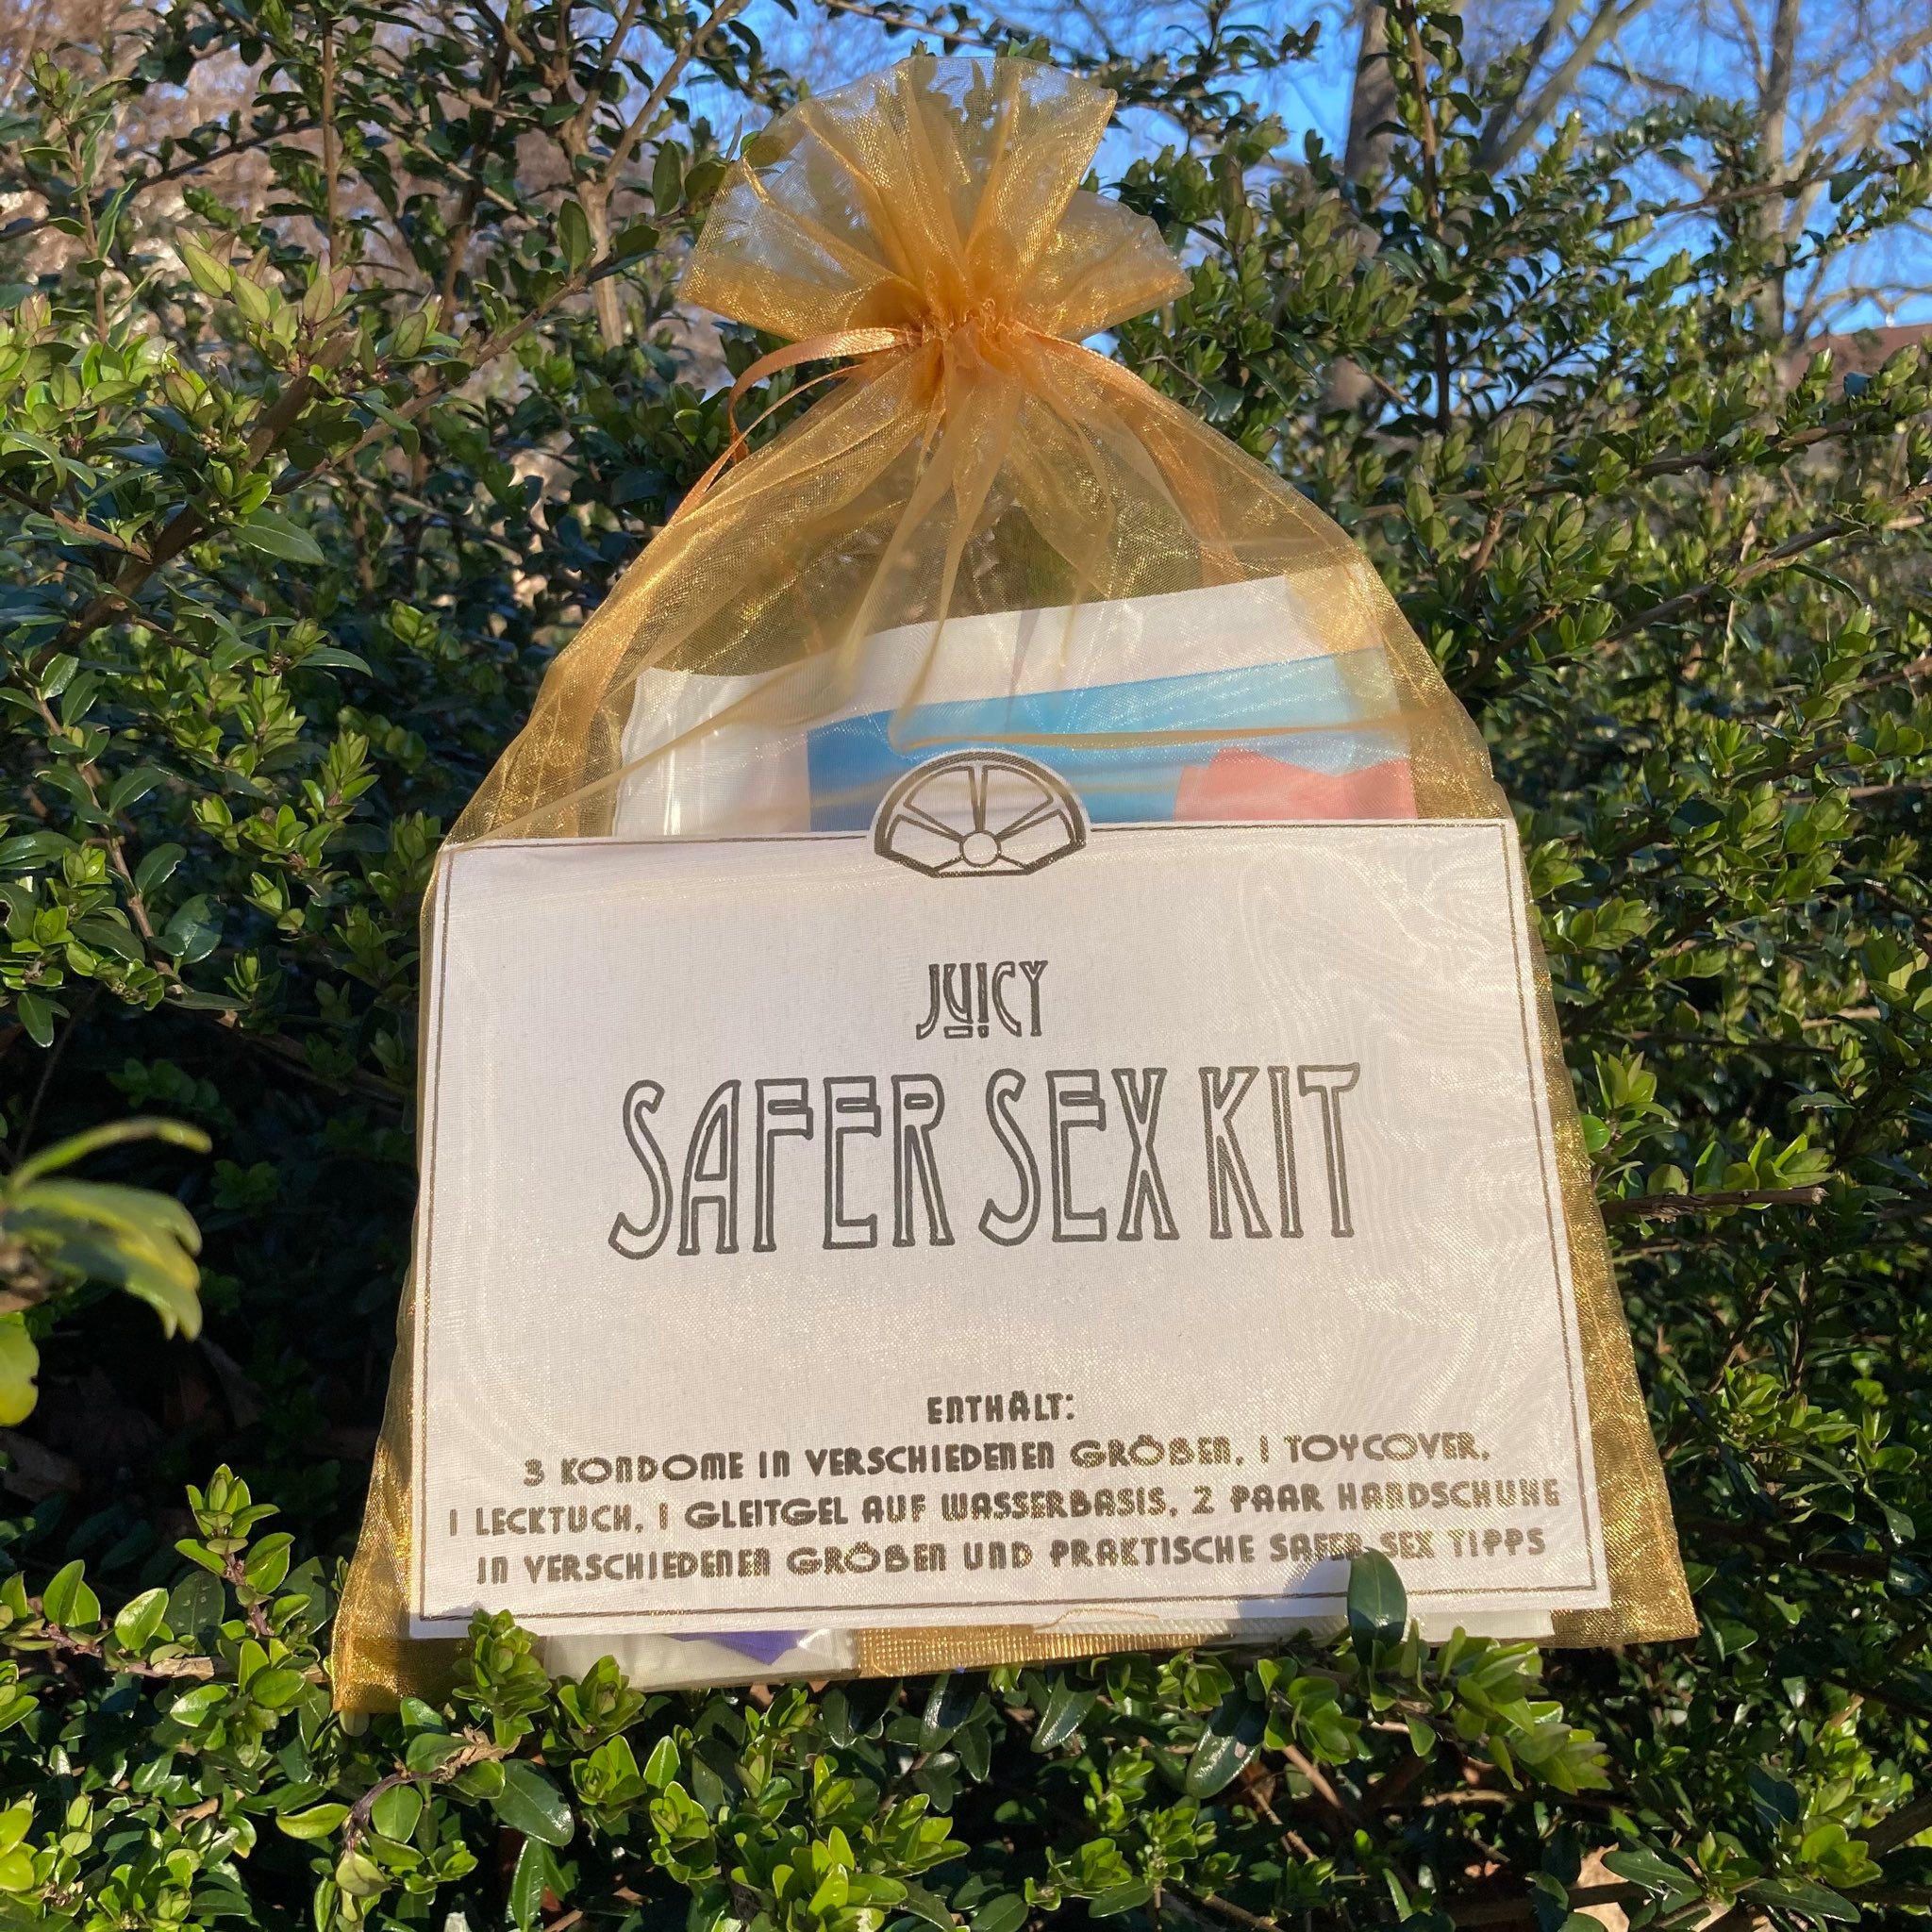 Ein gold-transparenter Organza Beutel liegt in einem Busch. Darin sind verschiedene Safer Sex Utensilien zu sehen. Es liegt ein Zettel bei auf dem Safer Sex Kit steht.